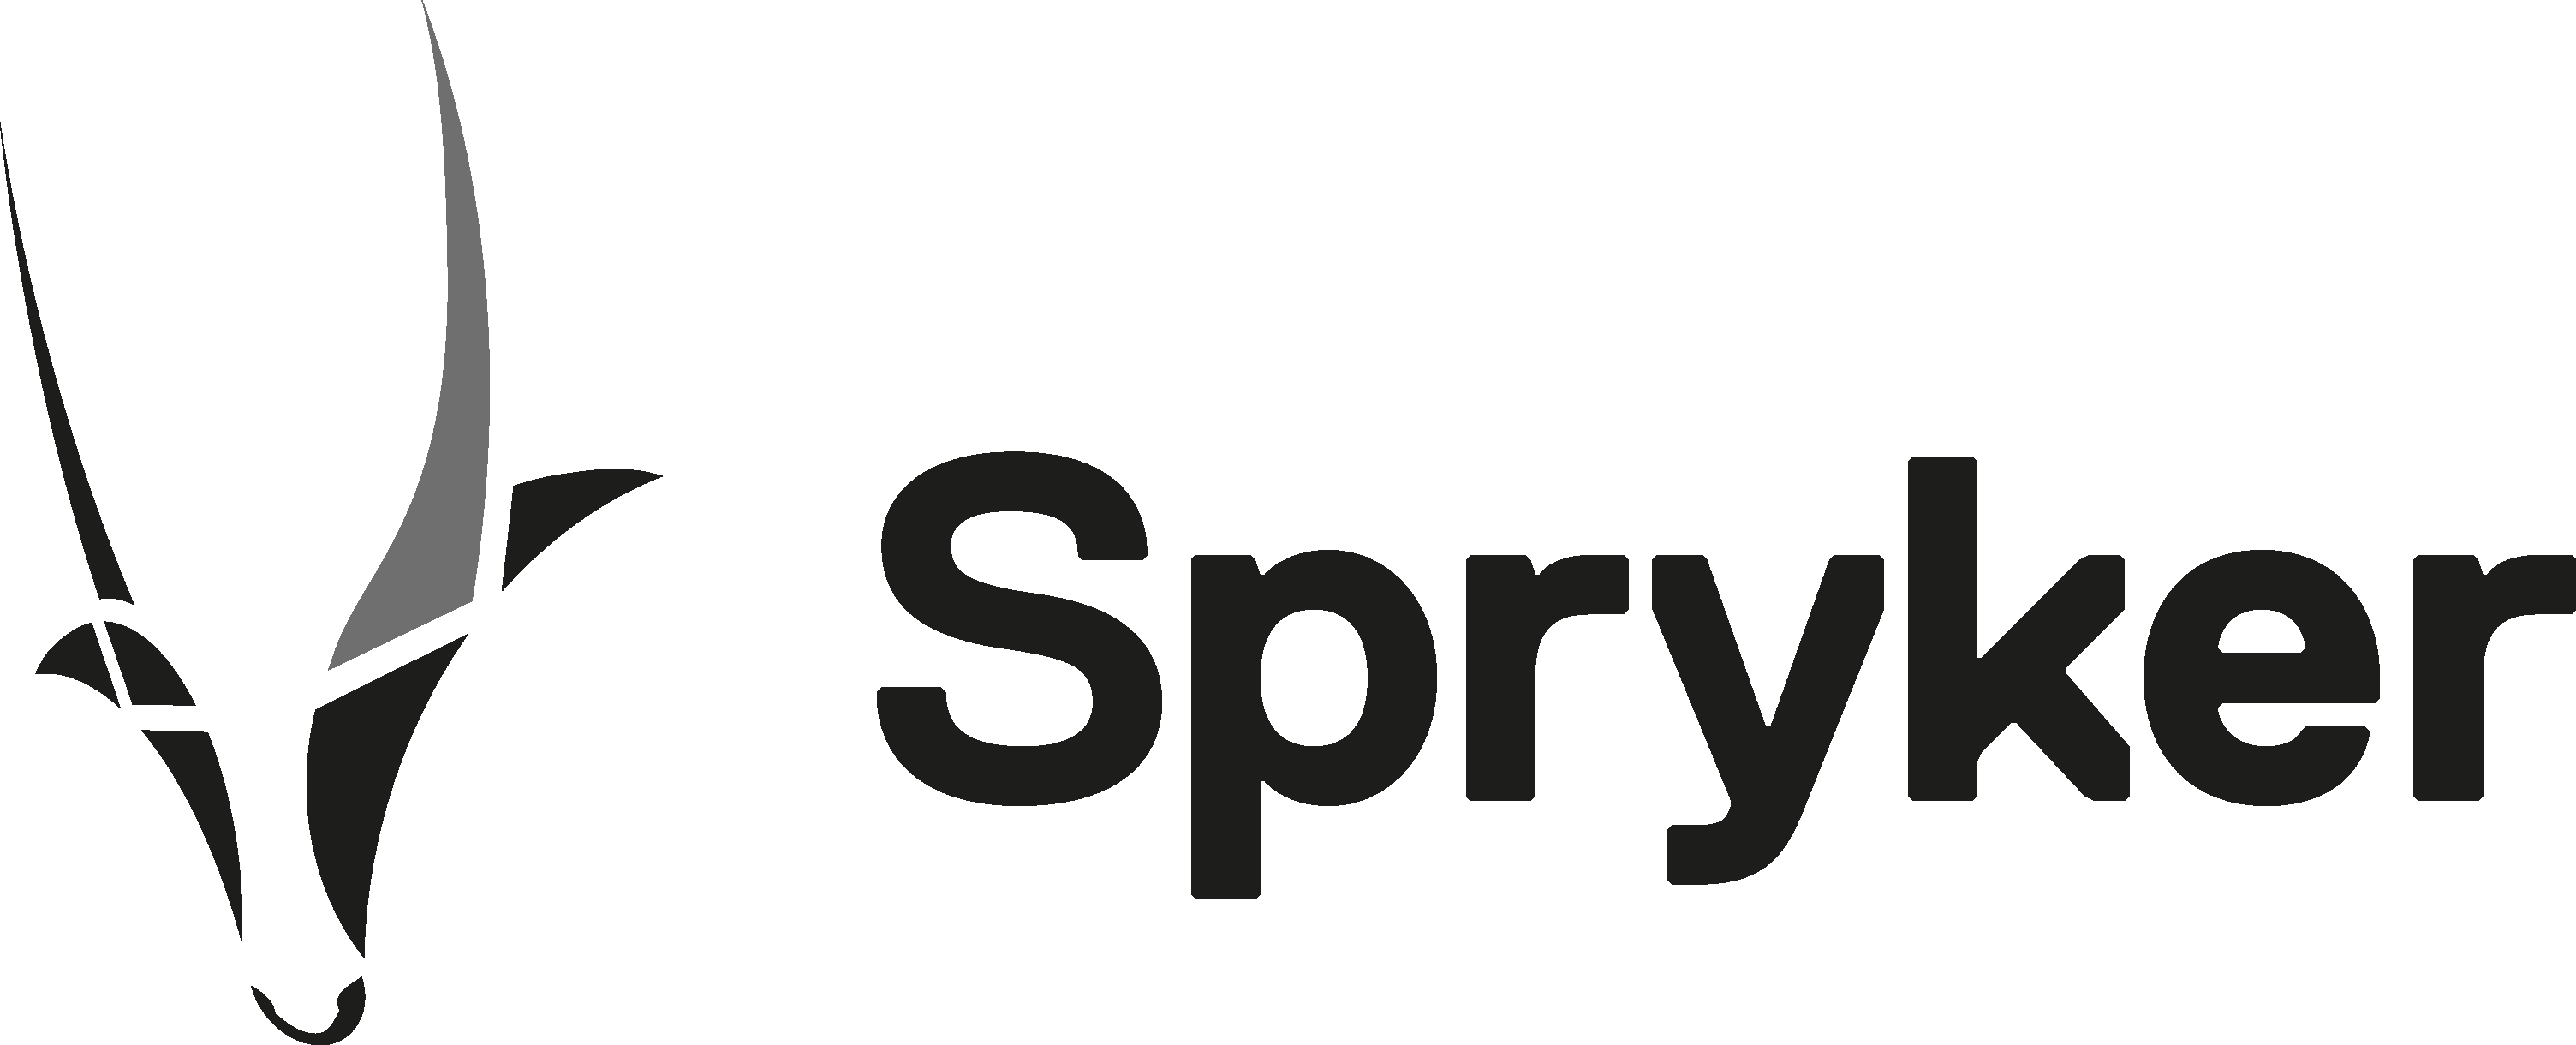 logo-spryker-2018-06-22